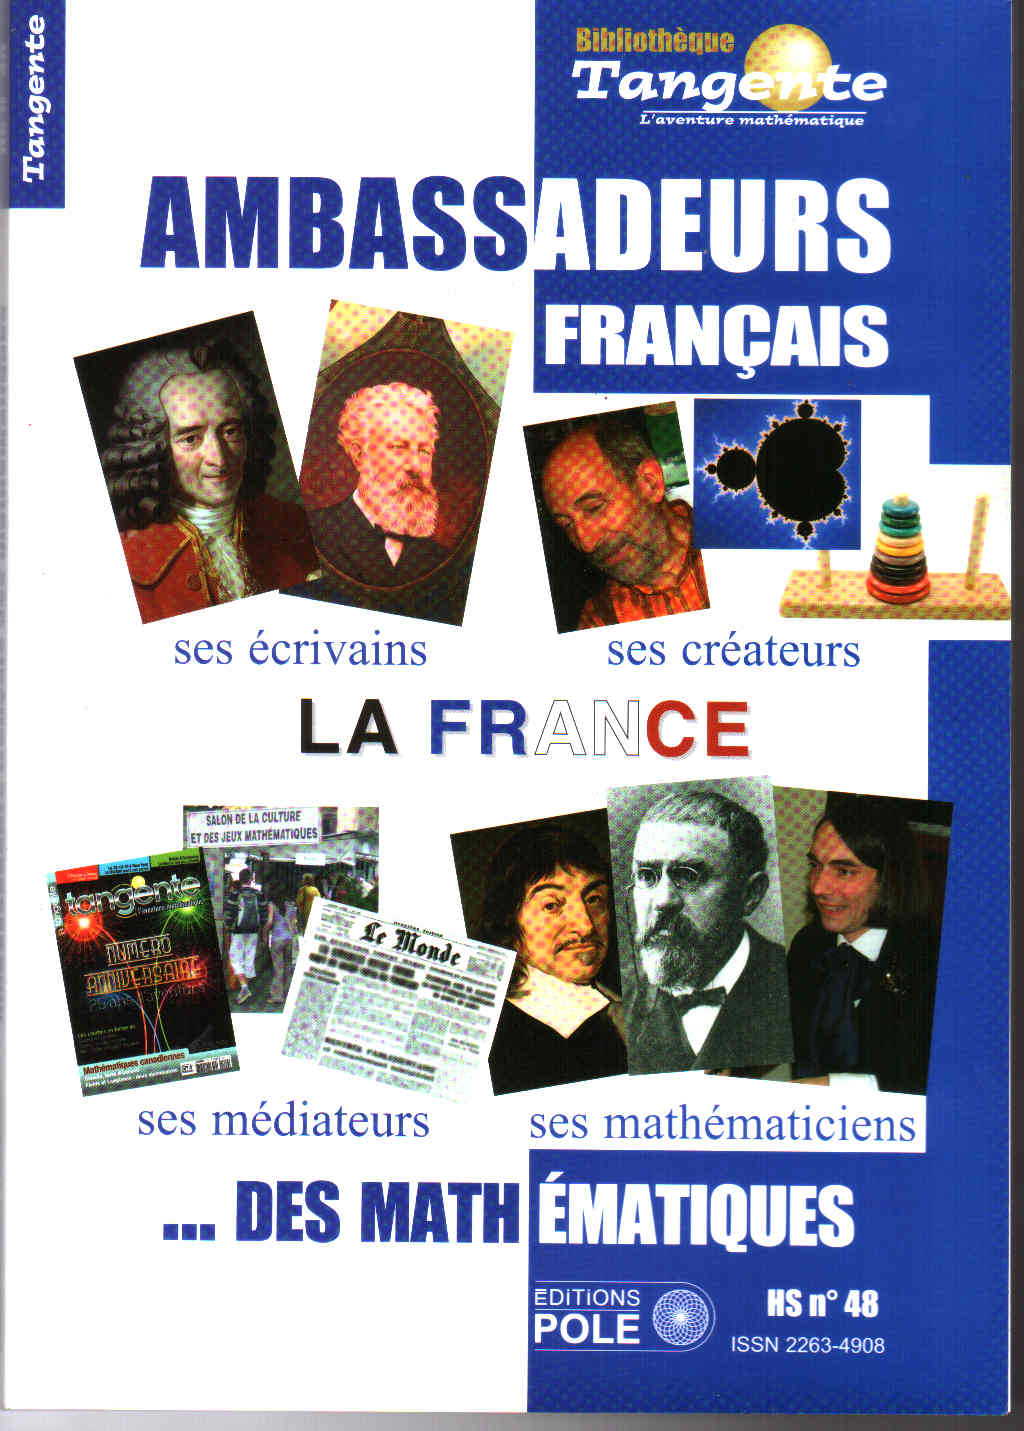 image Bib 48 - Ambassadeurs français des mathématiques